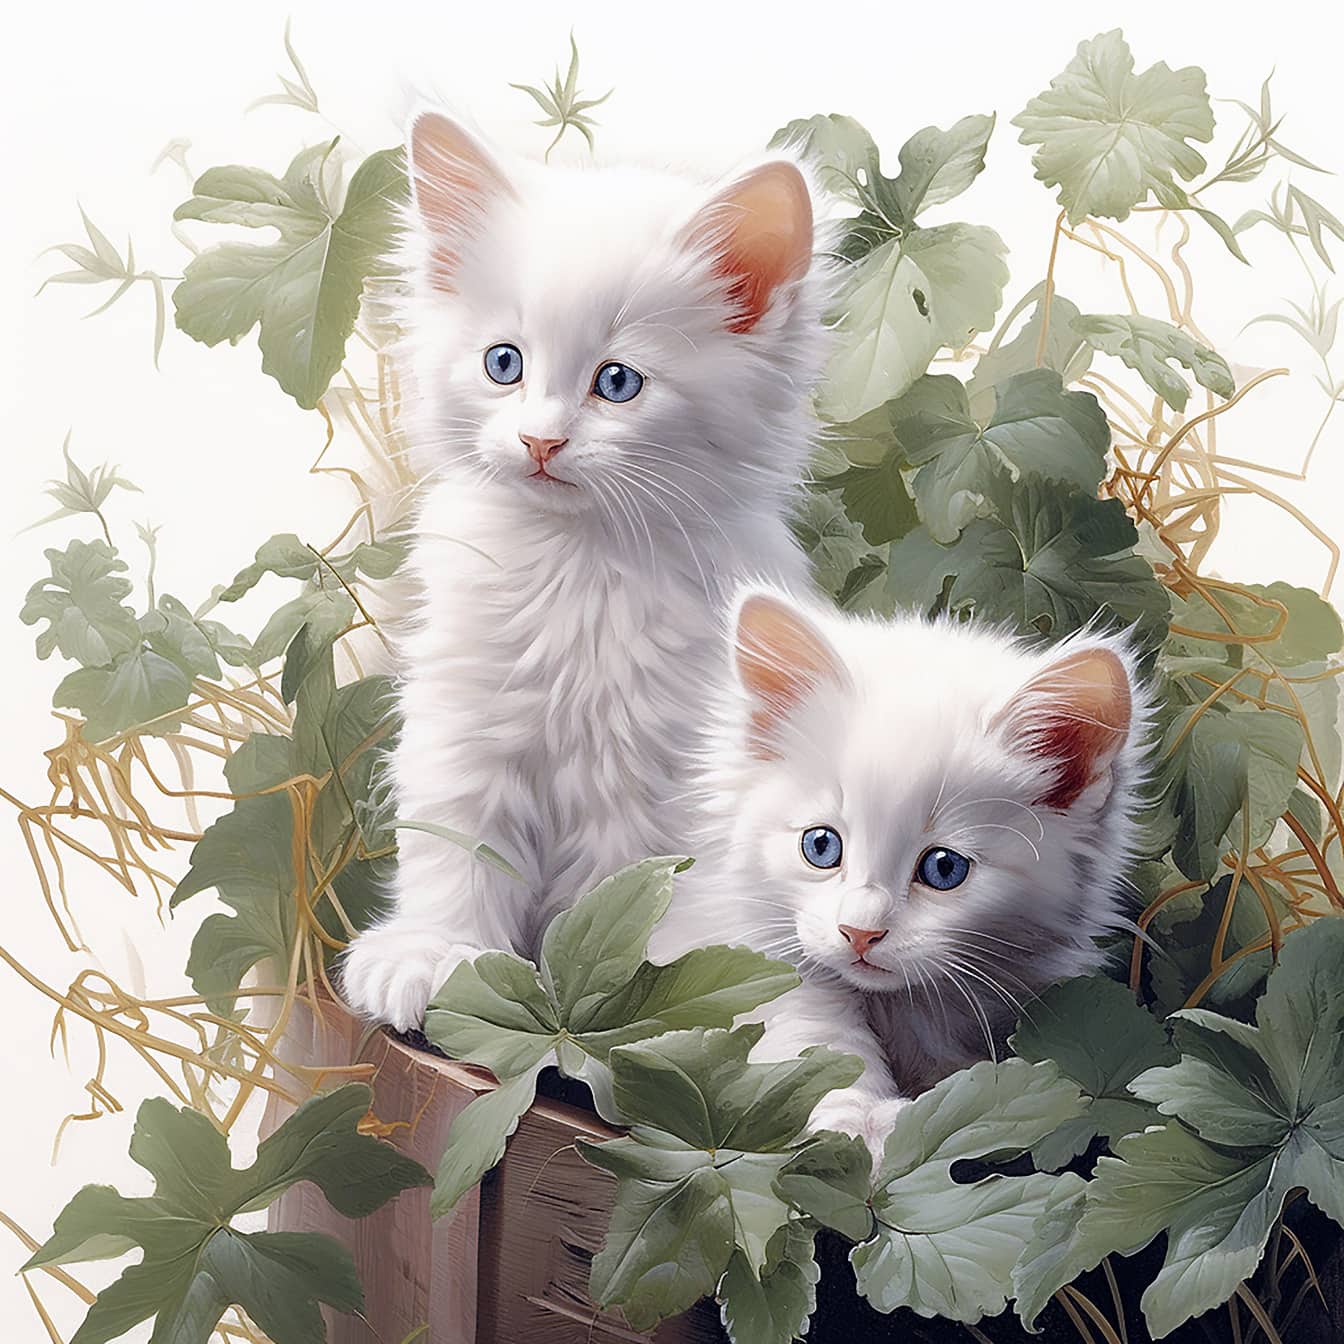 Adorable chaton blanc aux yeux bleus oeuvre numérique